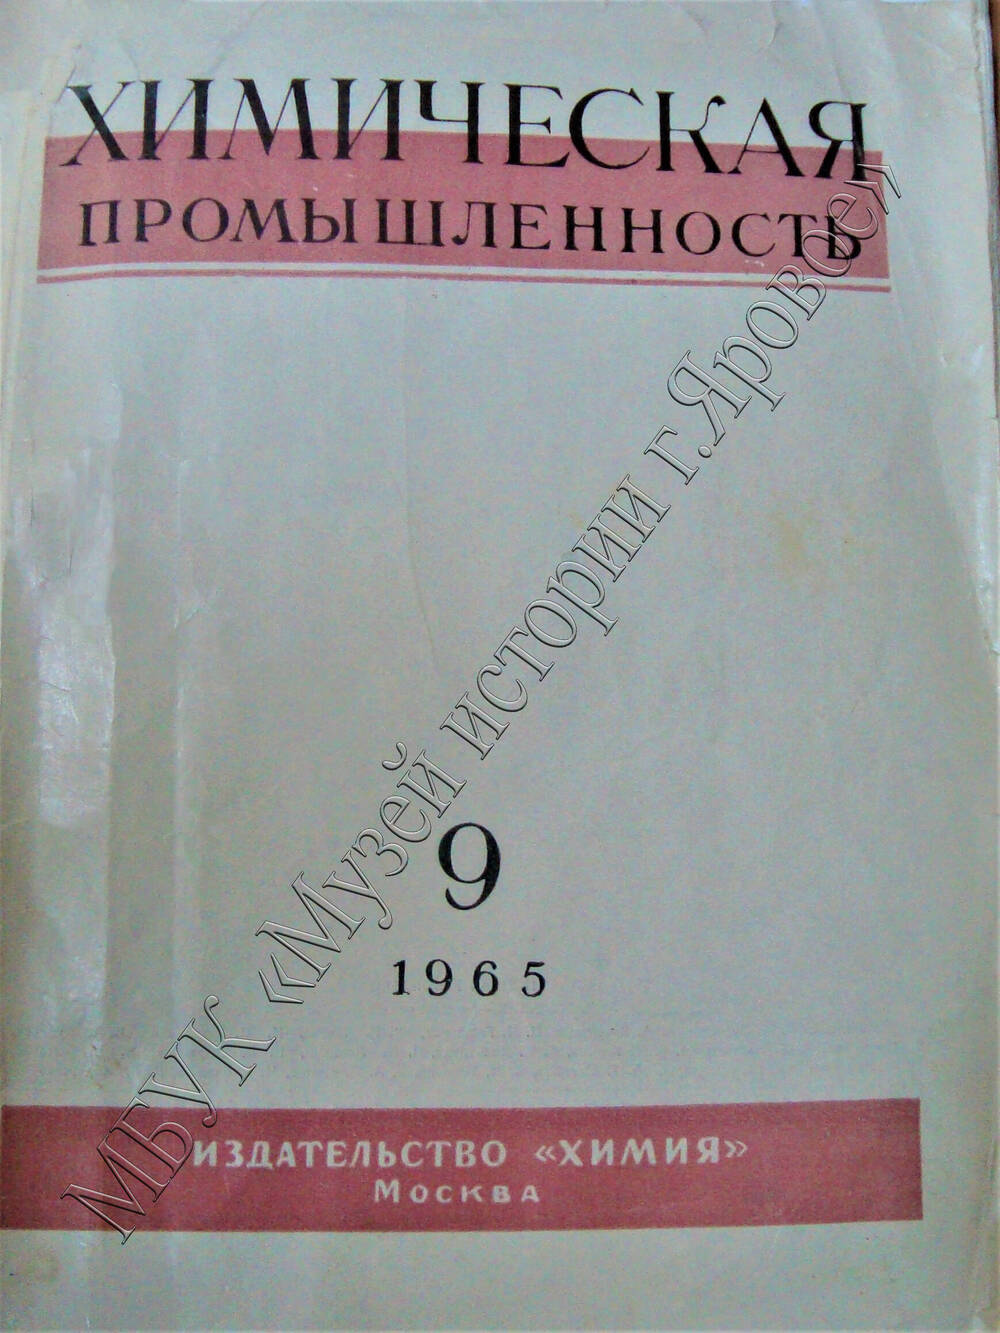 Журнал «Химическая промышленность», №9 за 1965г. г. Москва, издательство «Химия».